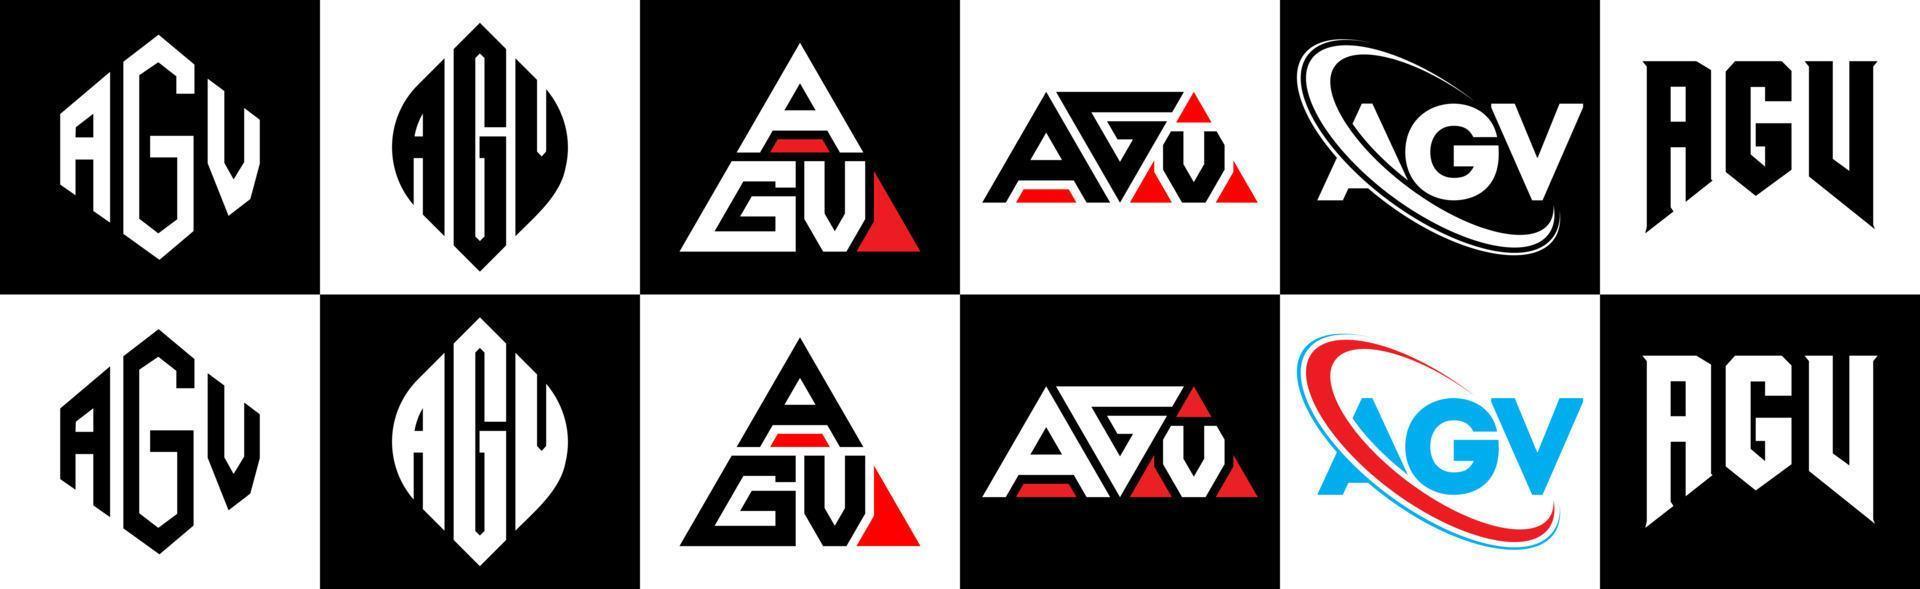 AGV-Brief-Logo-Design in sechs Stilen. agv polygon, kreis, dreieck, hexagon, flacher und einfacher stil mit schwarz-weißem buchstabenlogo in einer zeichenfläche. agv minimalistisches und klassisches logo vektor